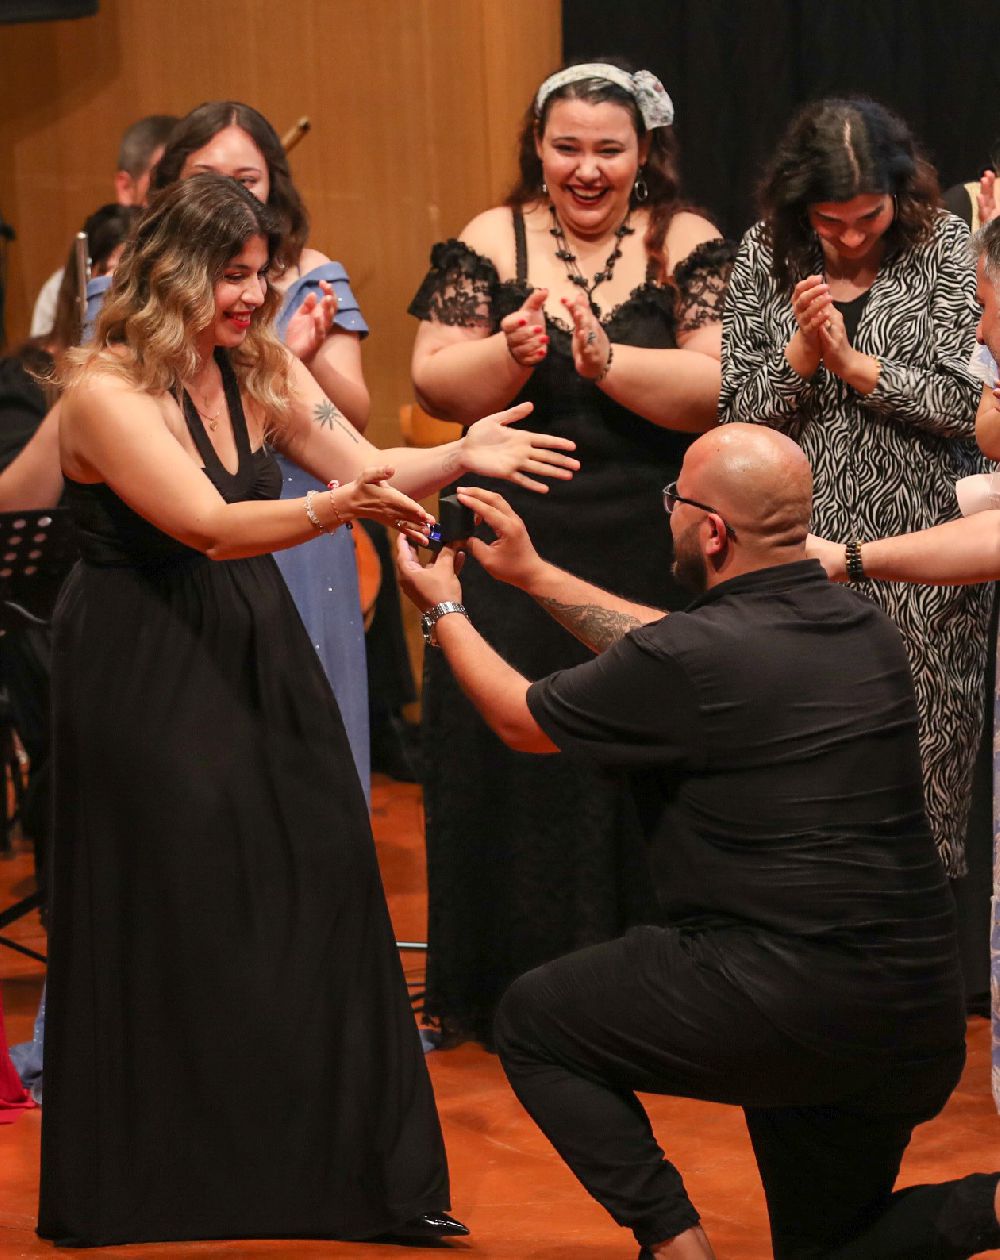 Konserde orkestrada yer alan müzik öğretmenine sürpriz evlilik teklifi